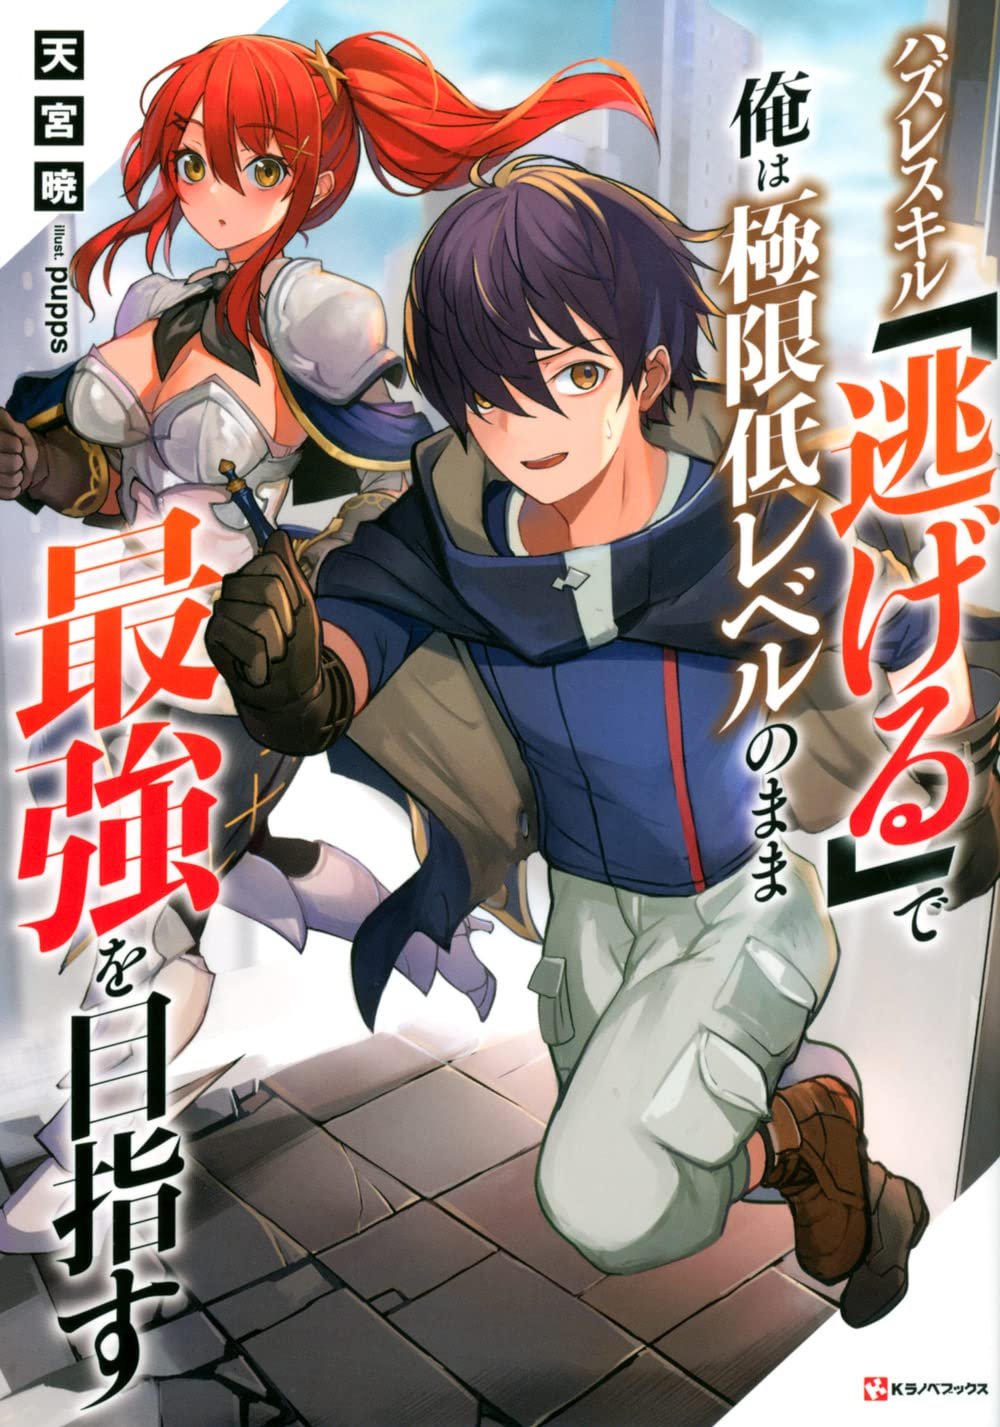 Youkoso Jitsuryoku Shijou Shugi no Kyoushitsu e - Novel Updates